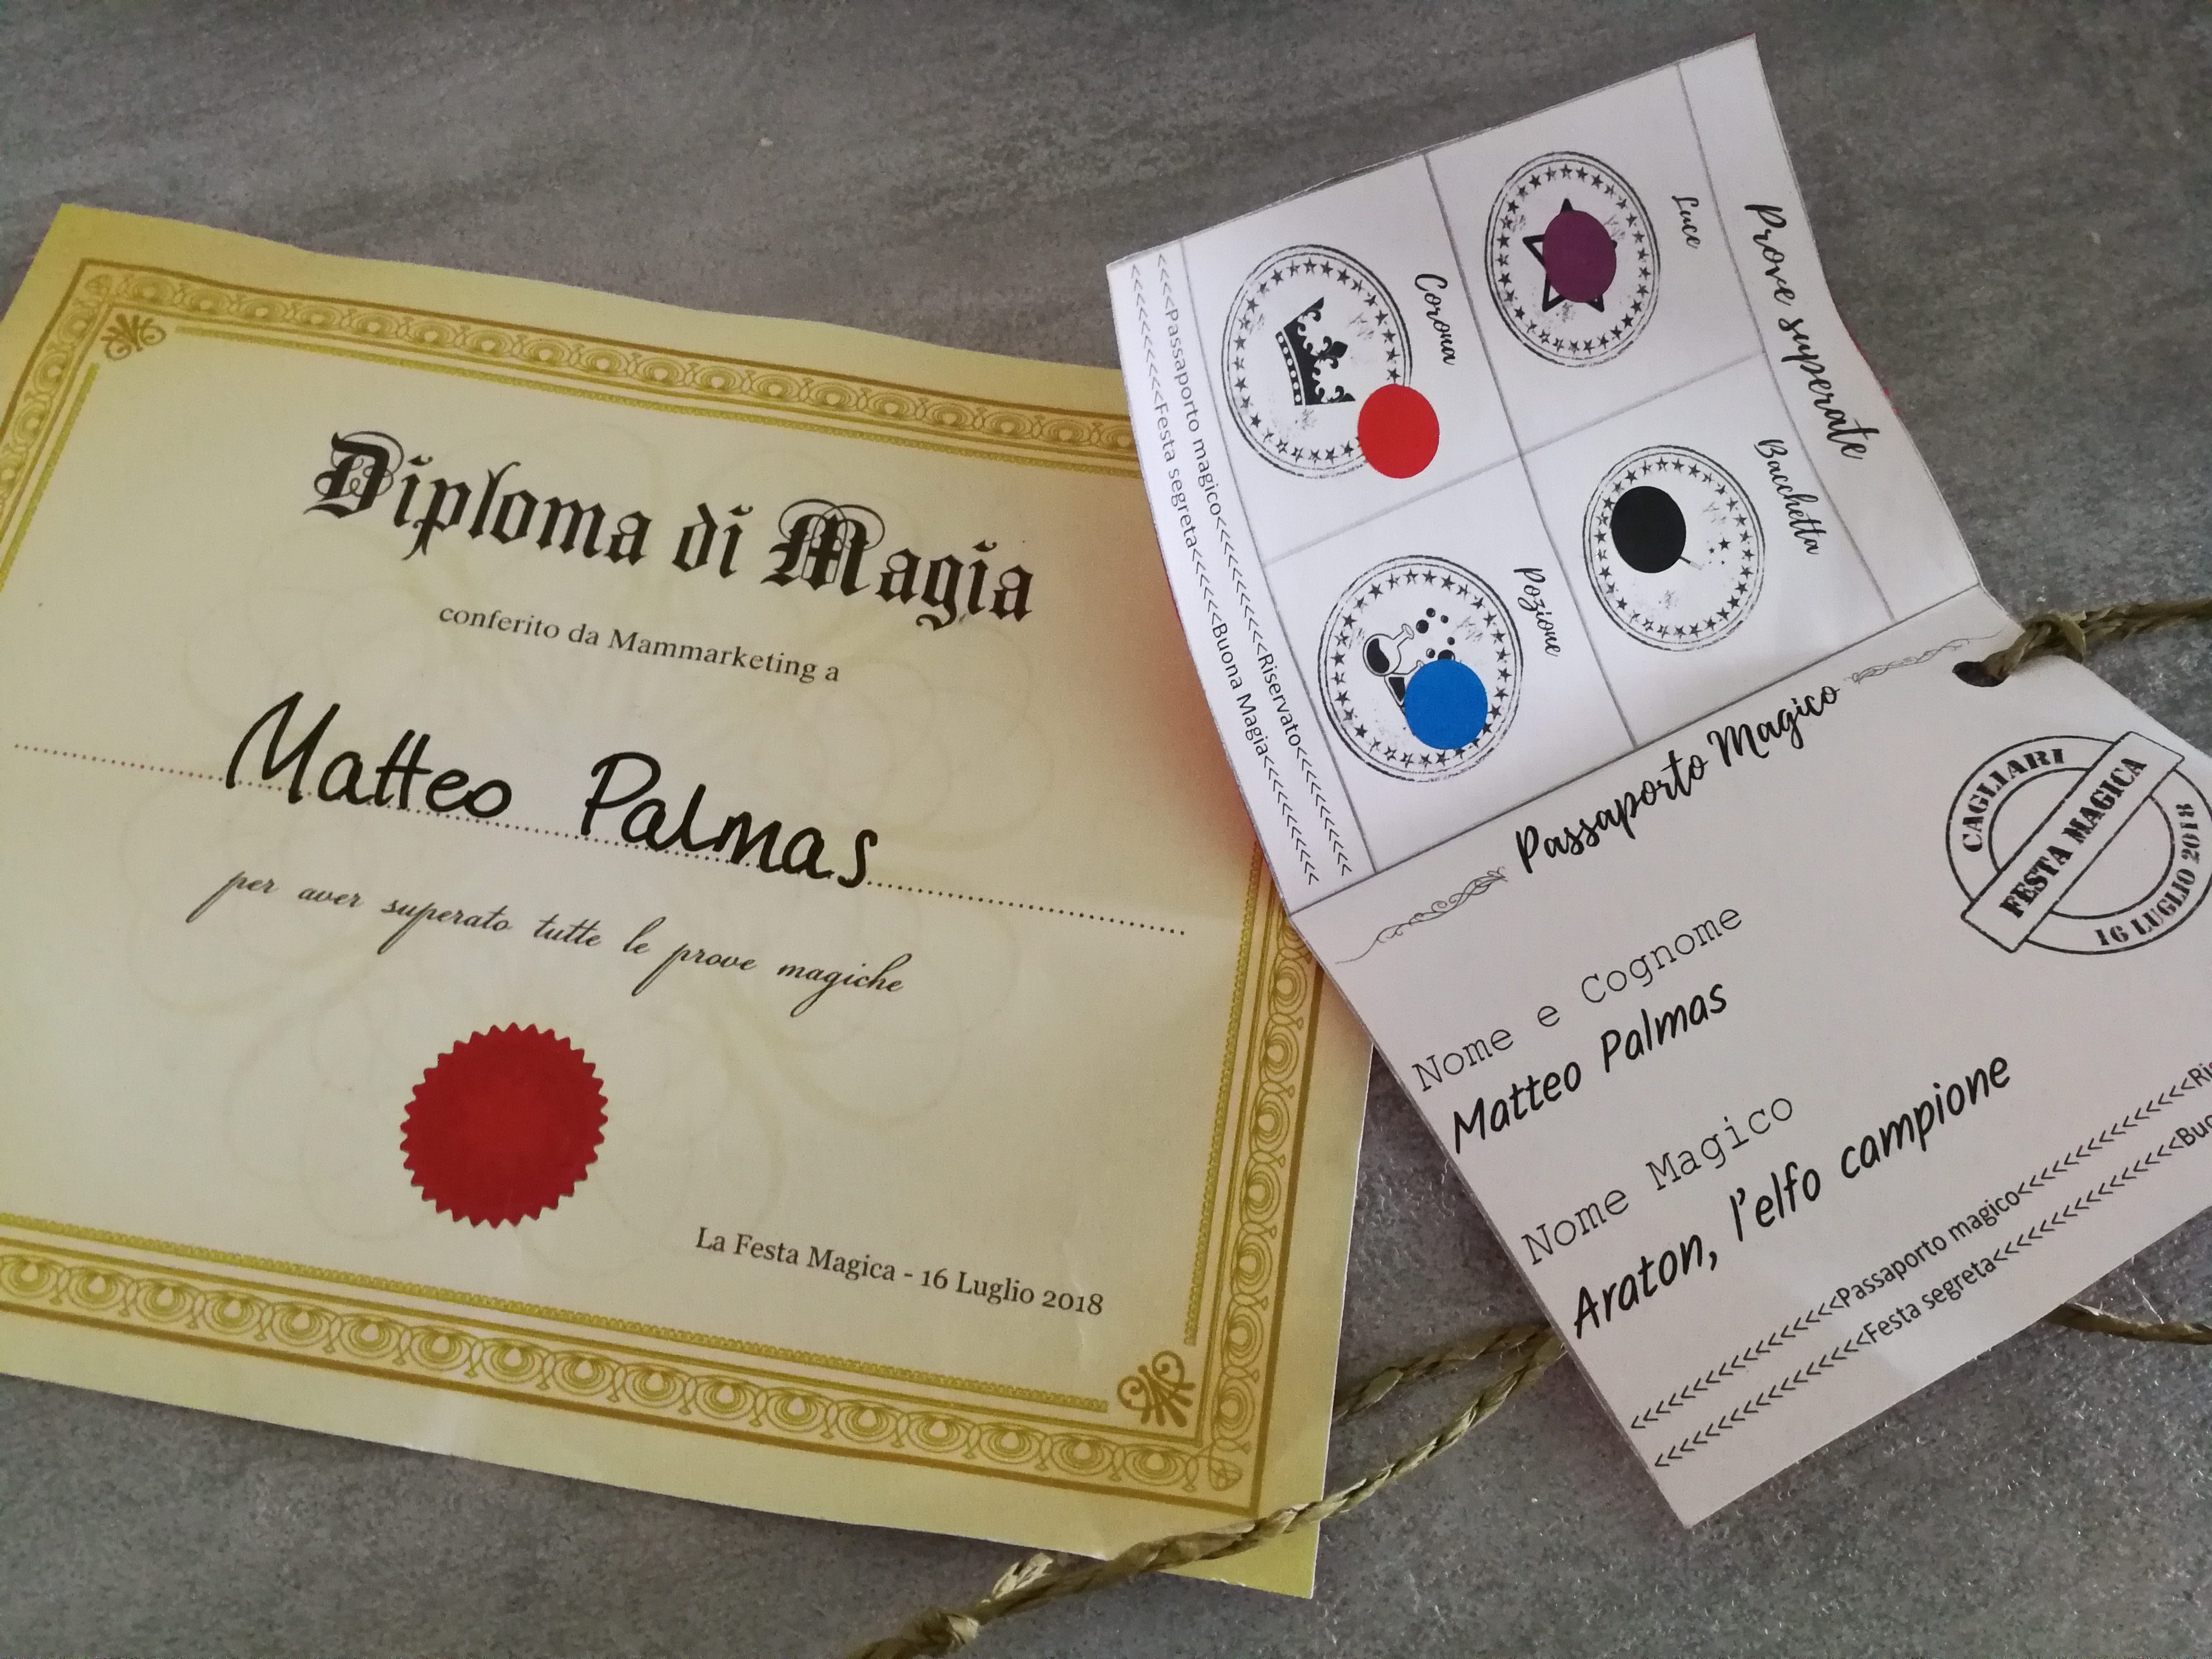 Diploma di magia